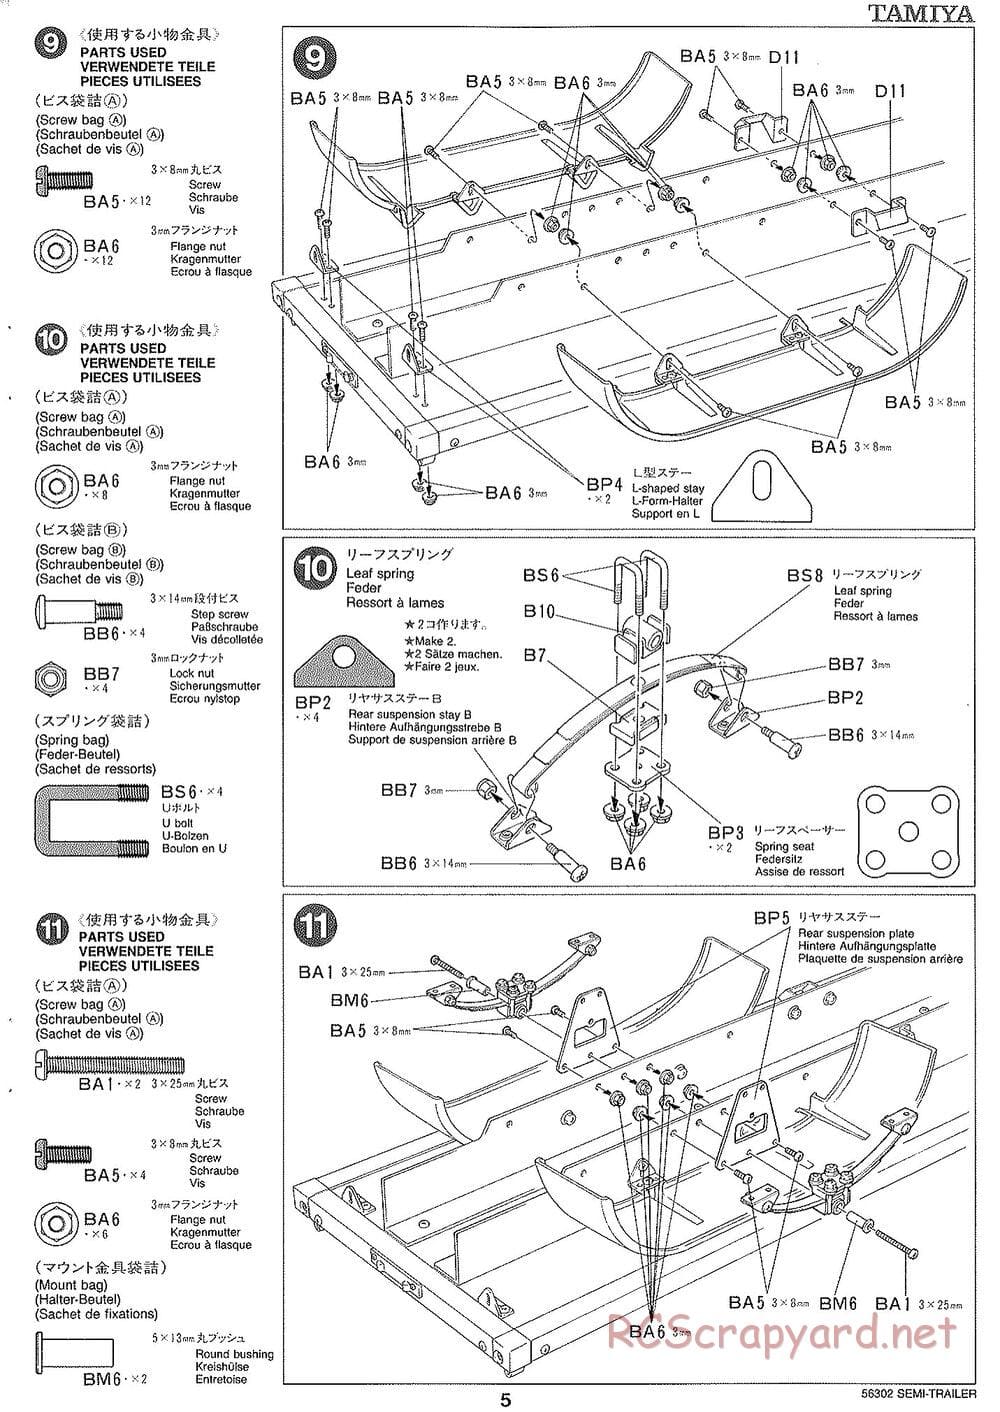 Tamiya - Semi Box Trailer Chassis - Manual - Page 5